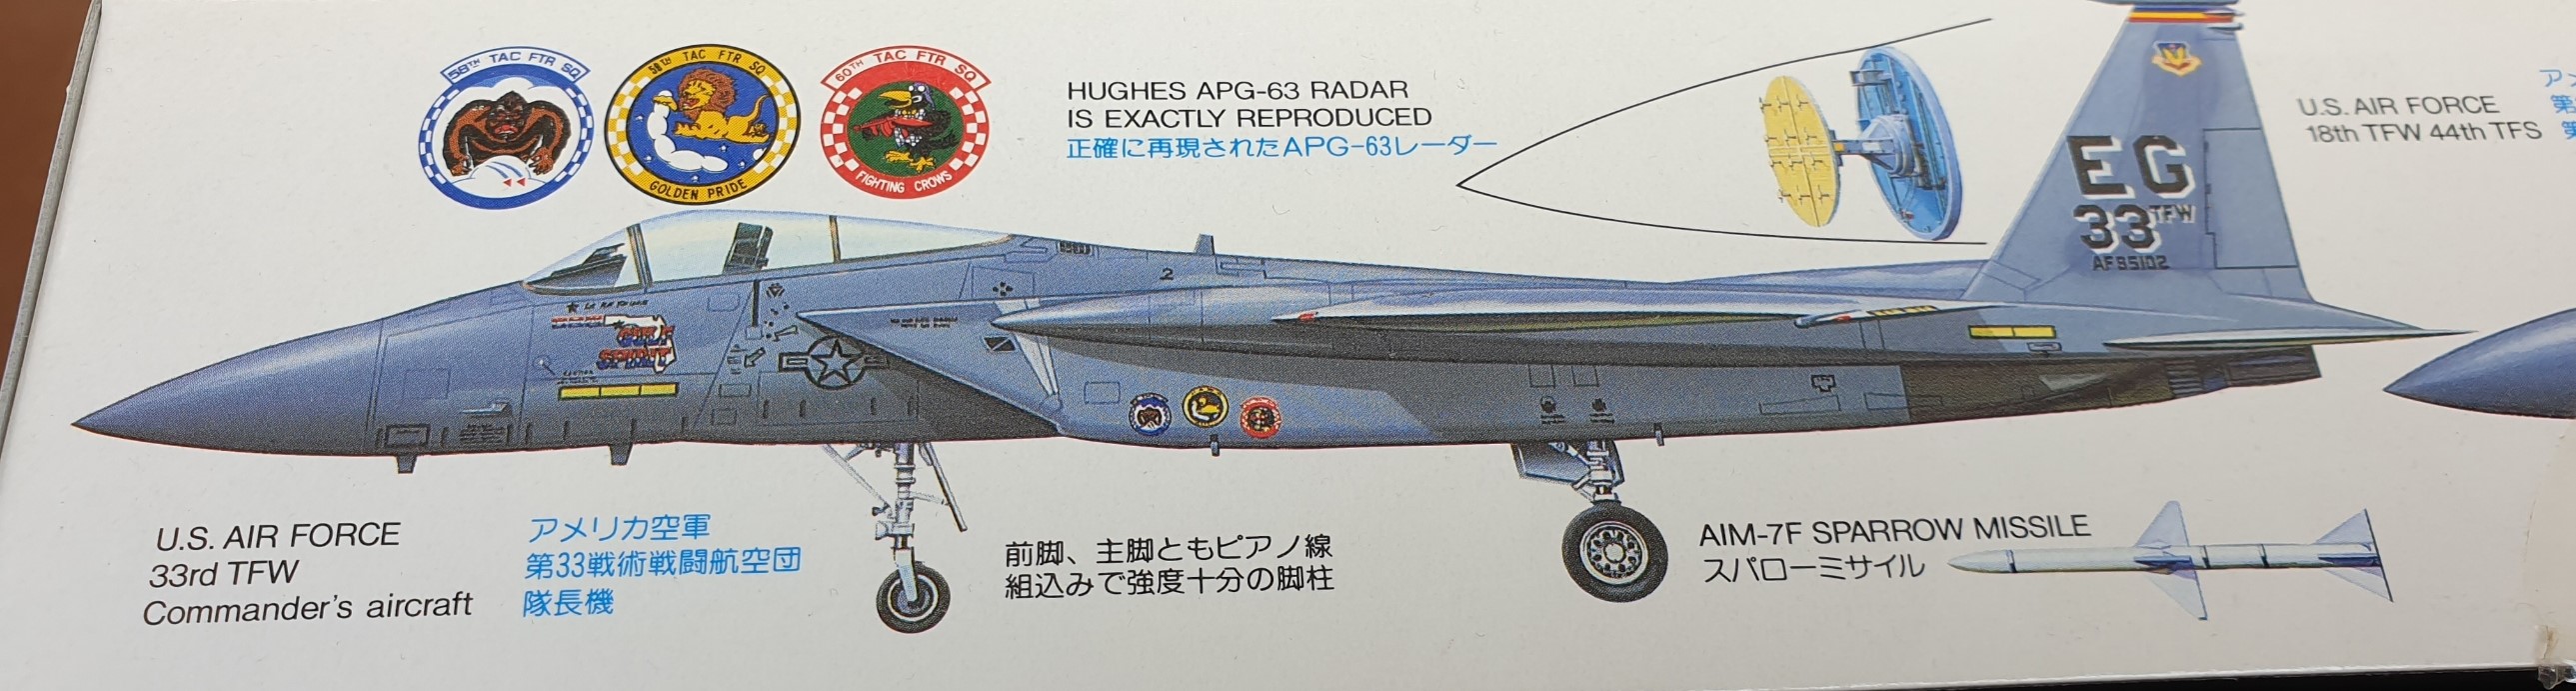 [Tamiya] 1/48 - McDonnell-Douglas F-15C Eagle   20221050